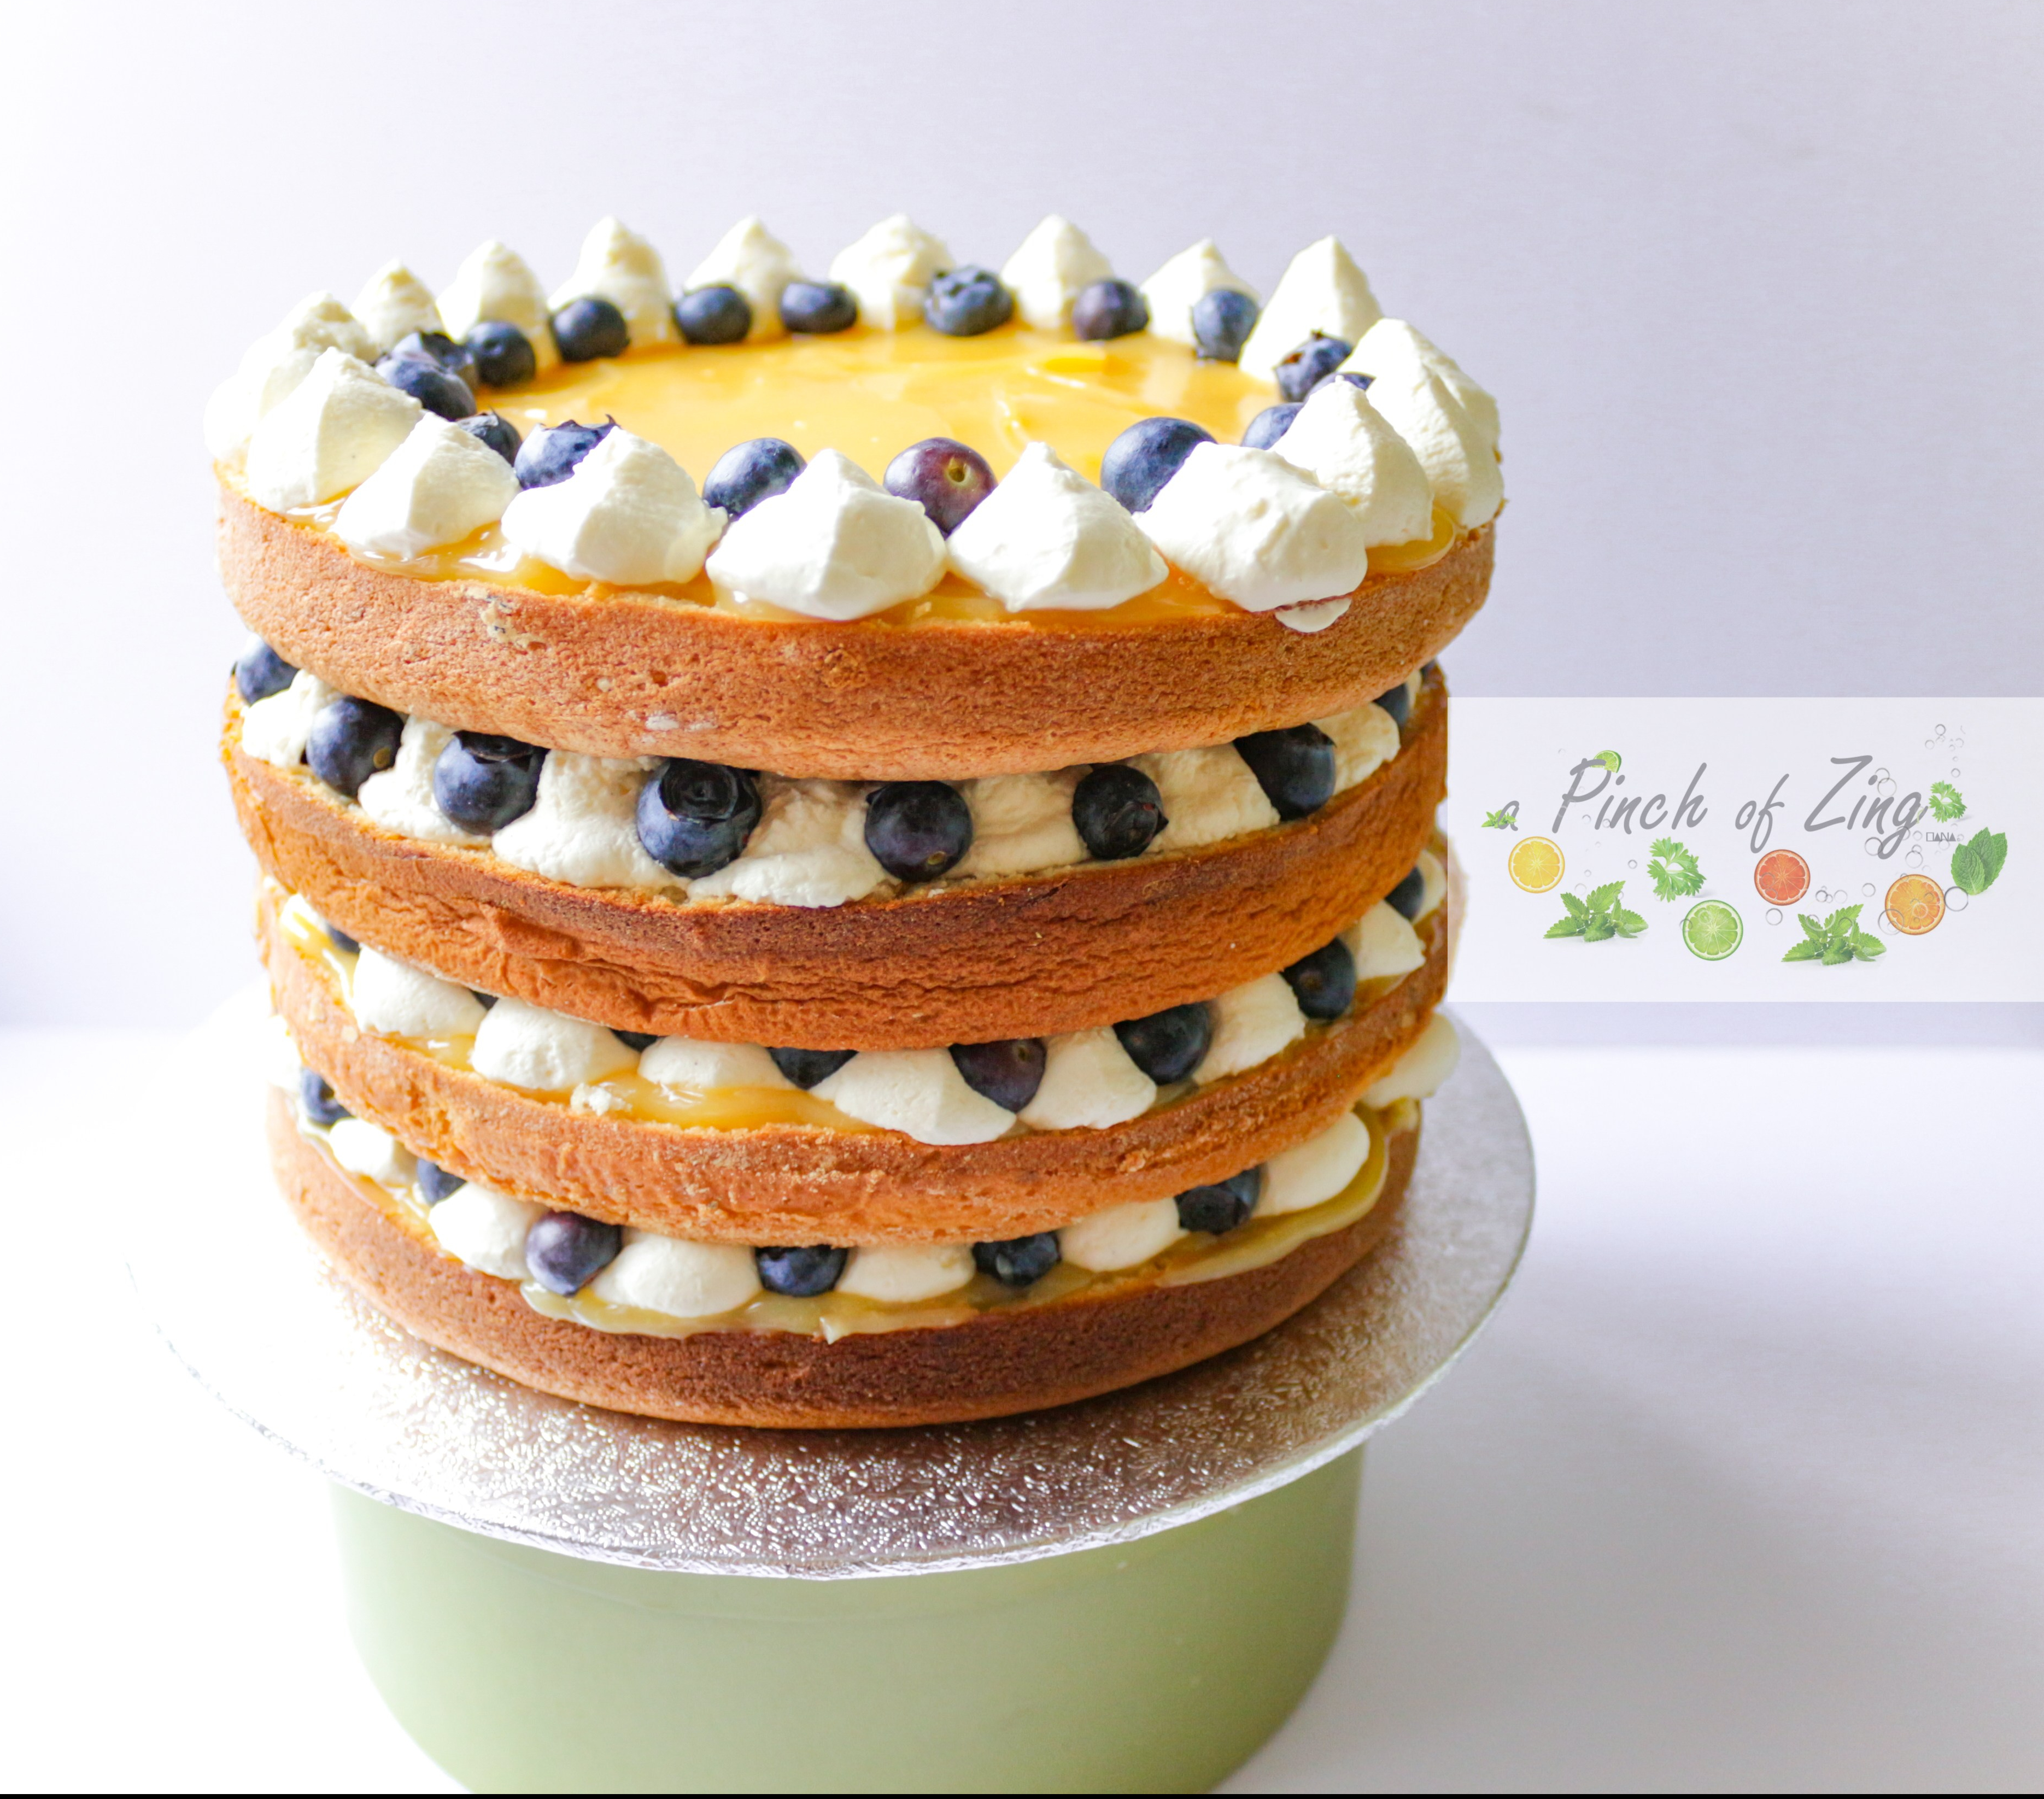 Lemon and blueberry cake